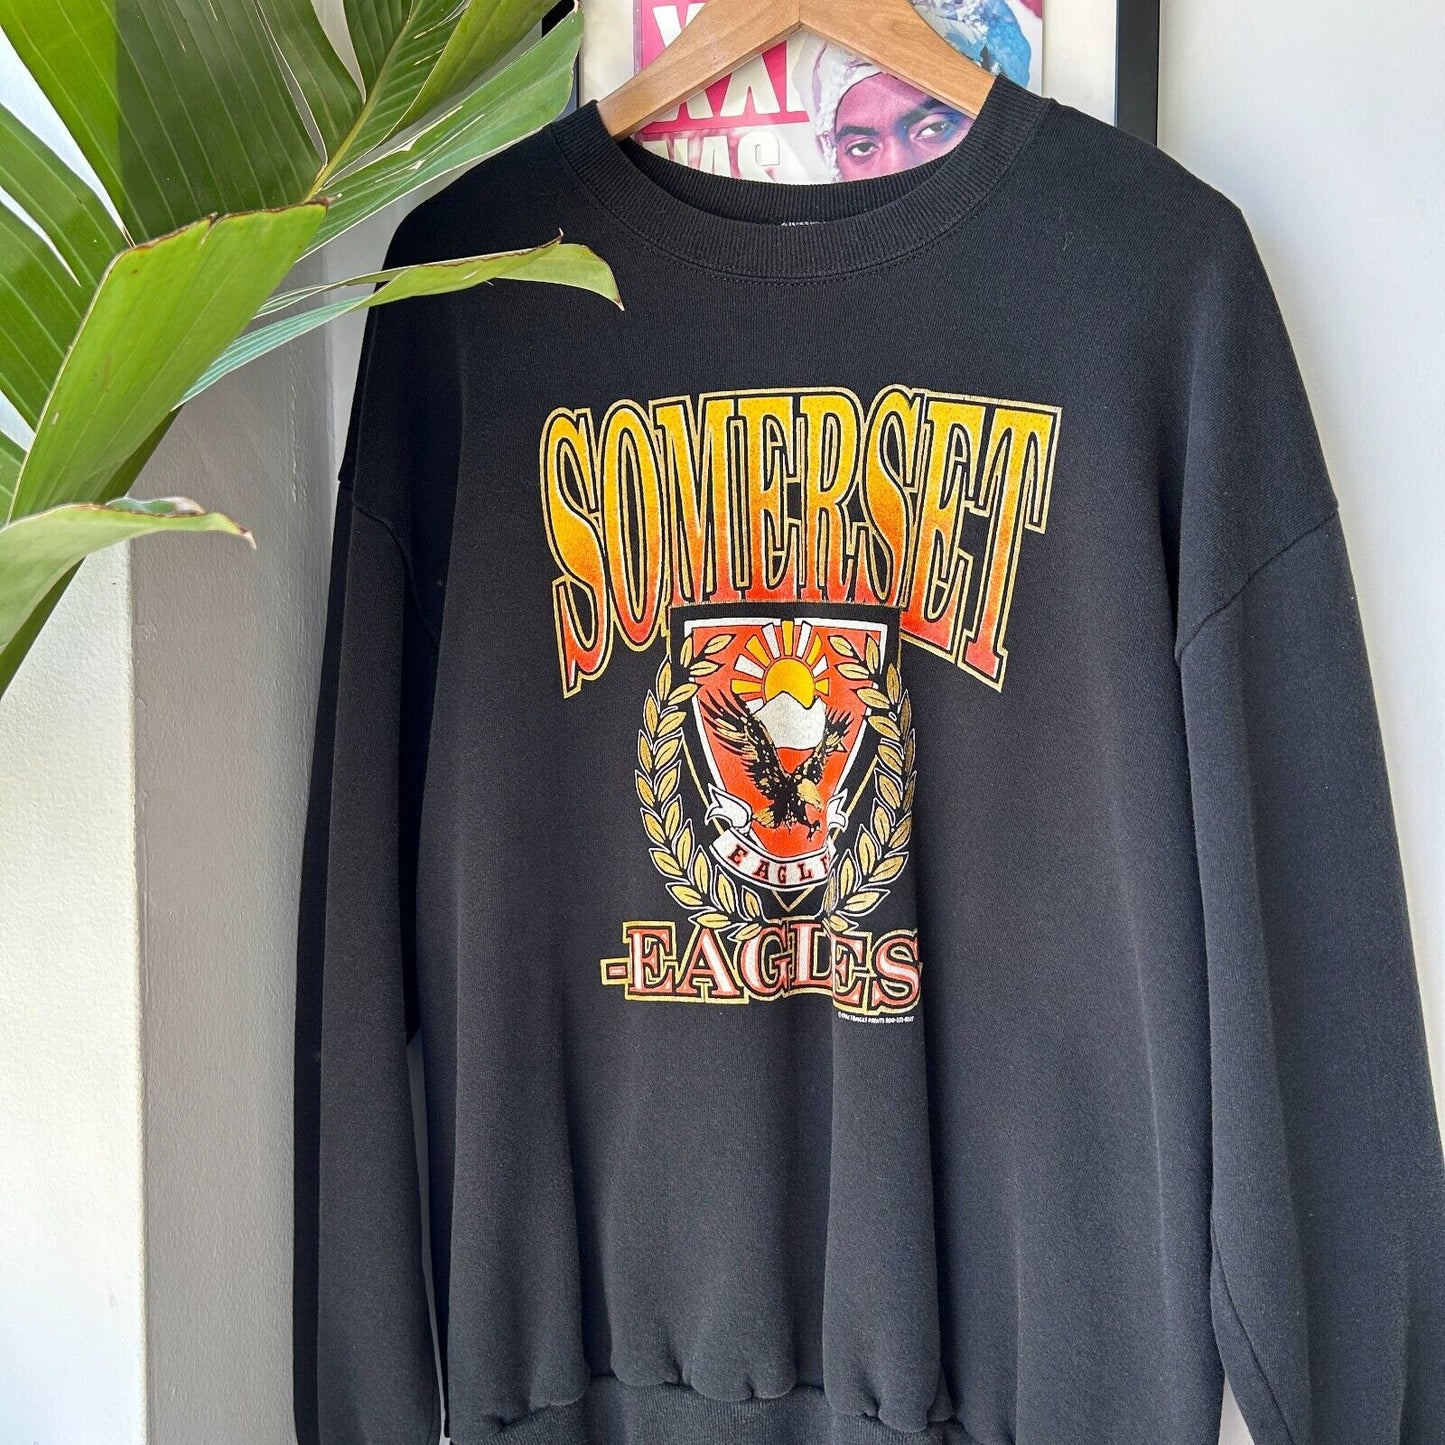 VINTAGE 1994 | Somerset Eagles Crewneck Sweater sz XL Adult